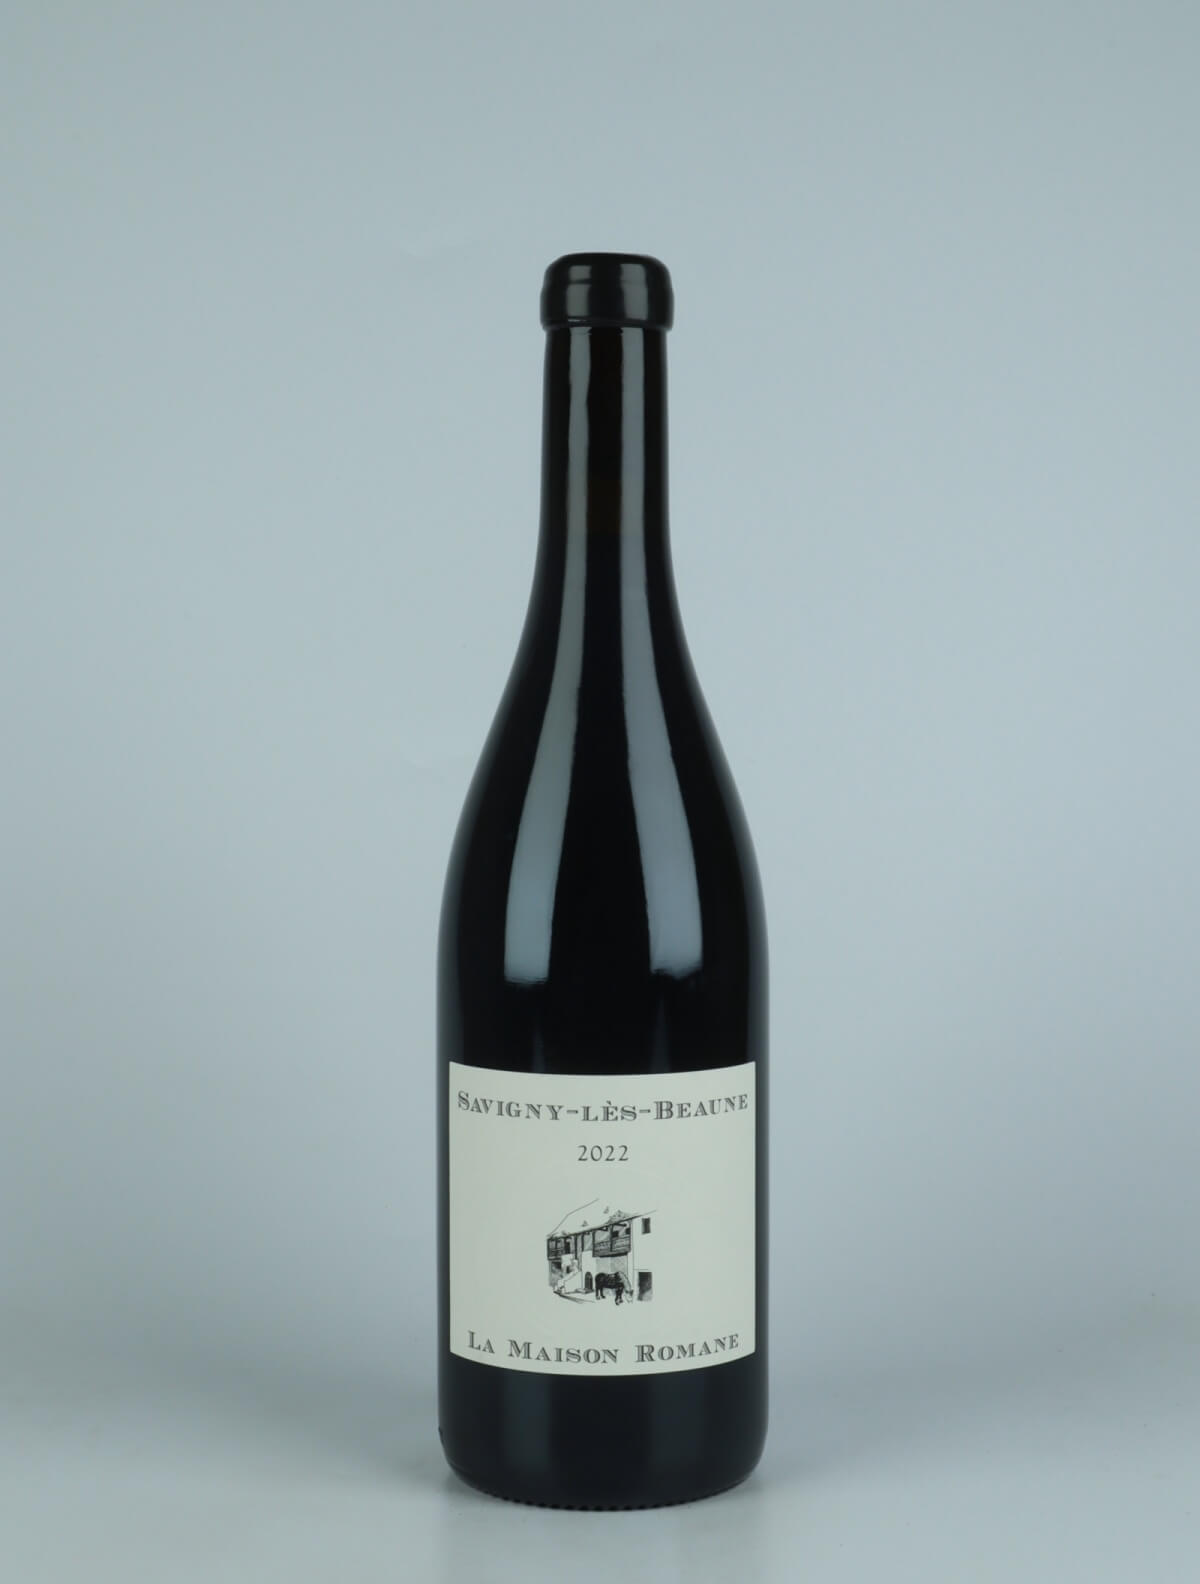 En flaske 2022 Savigny Les Beaune Rødvin fra La Maison Romane, Bourgogne i Frankrig